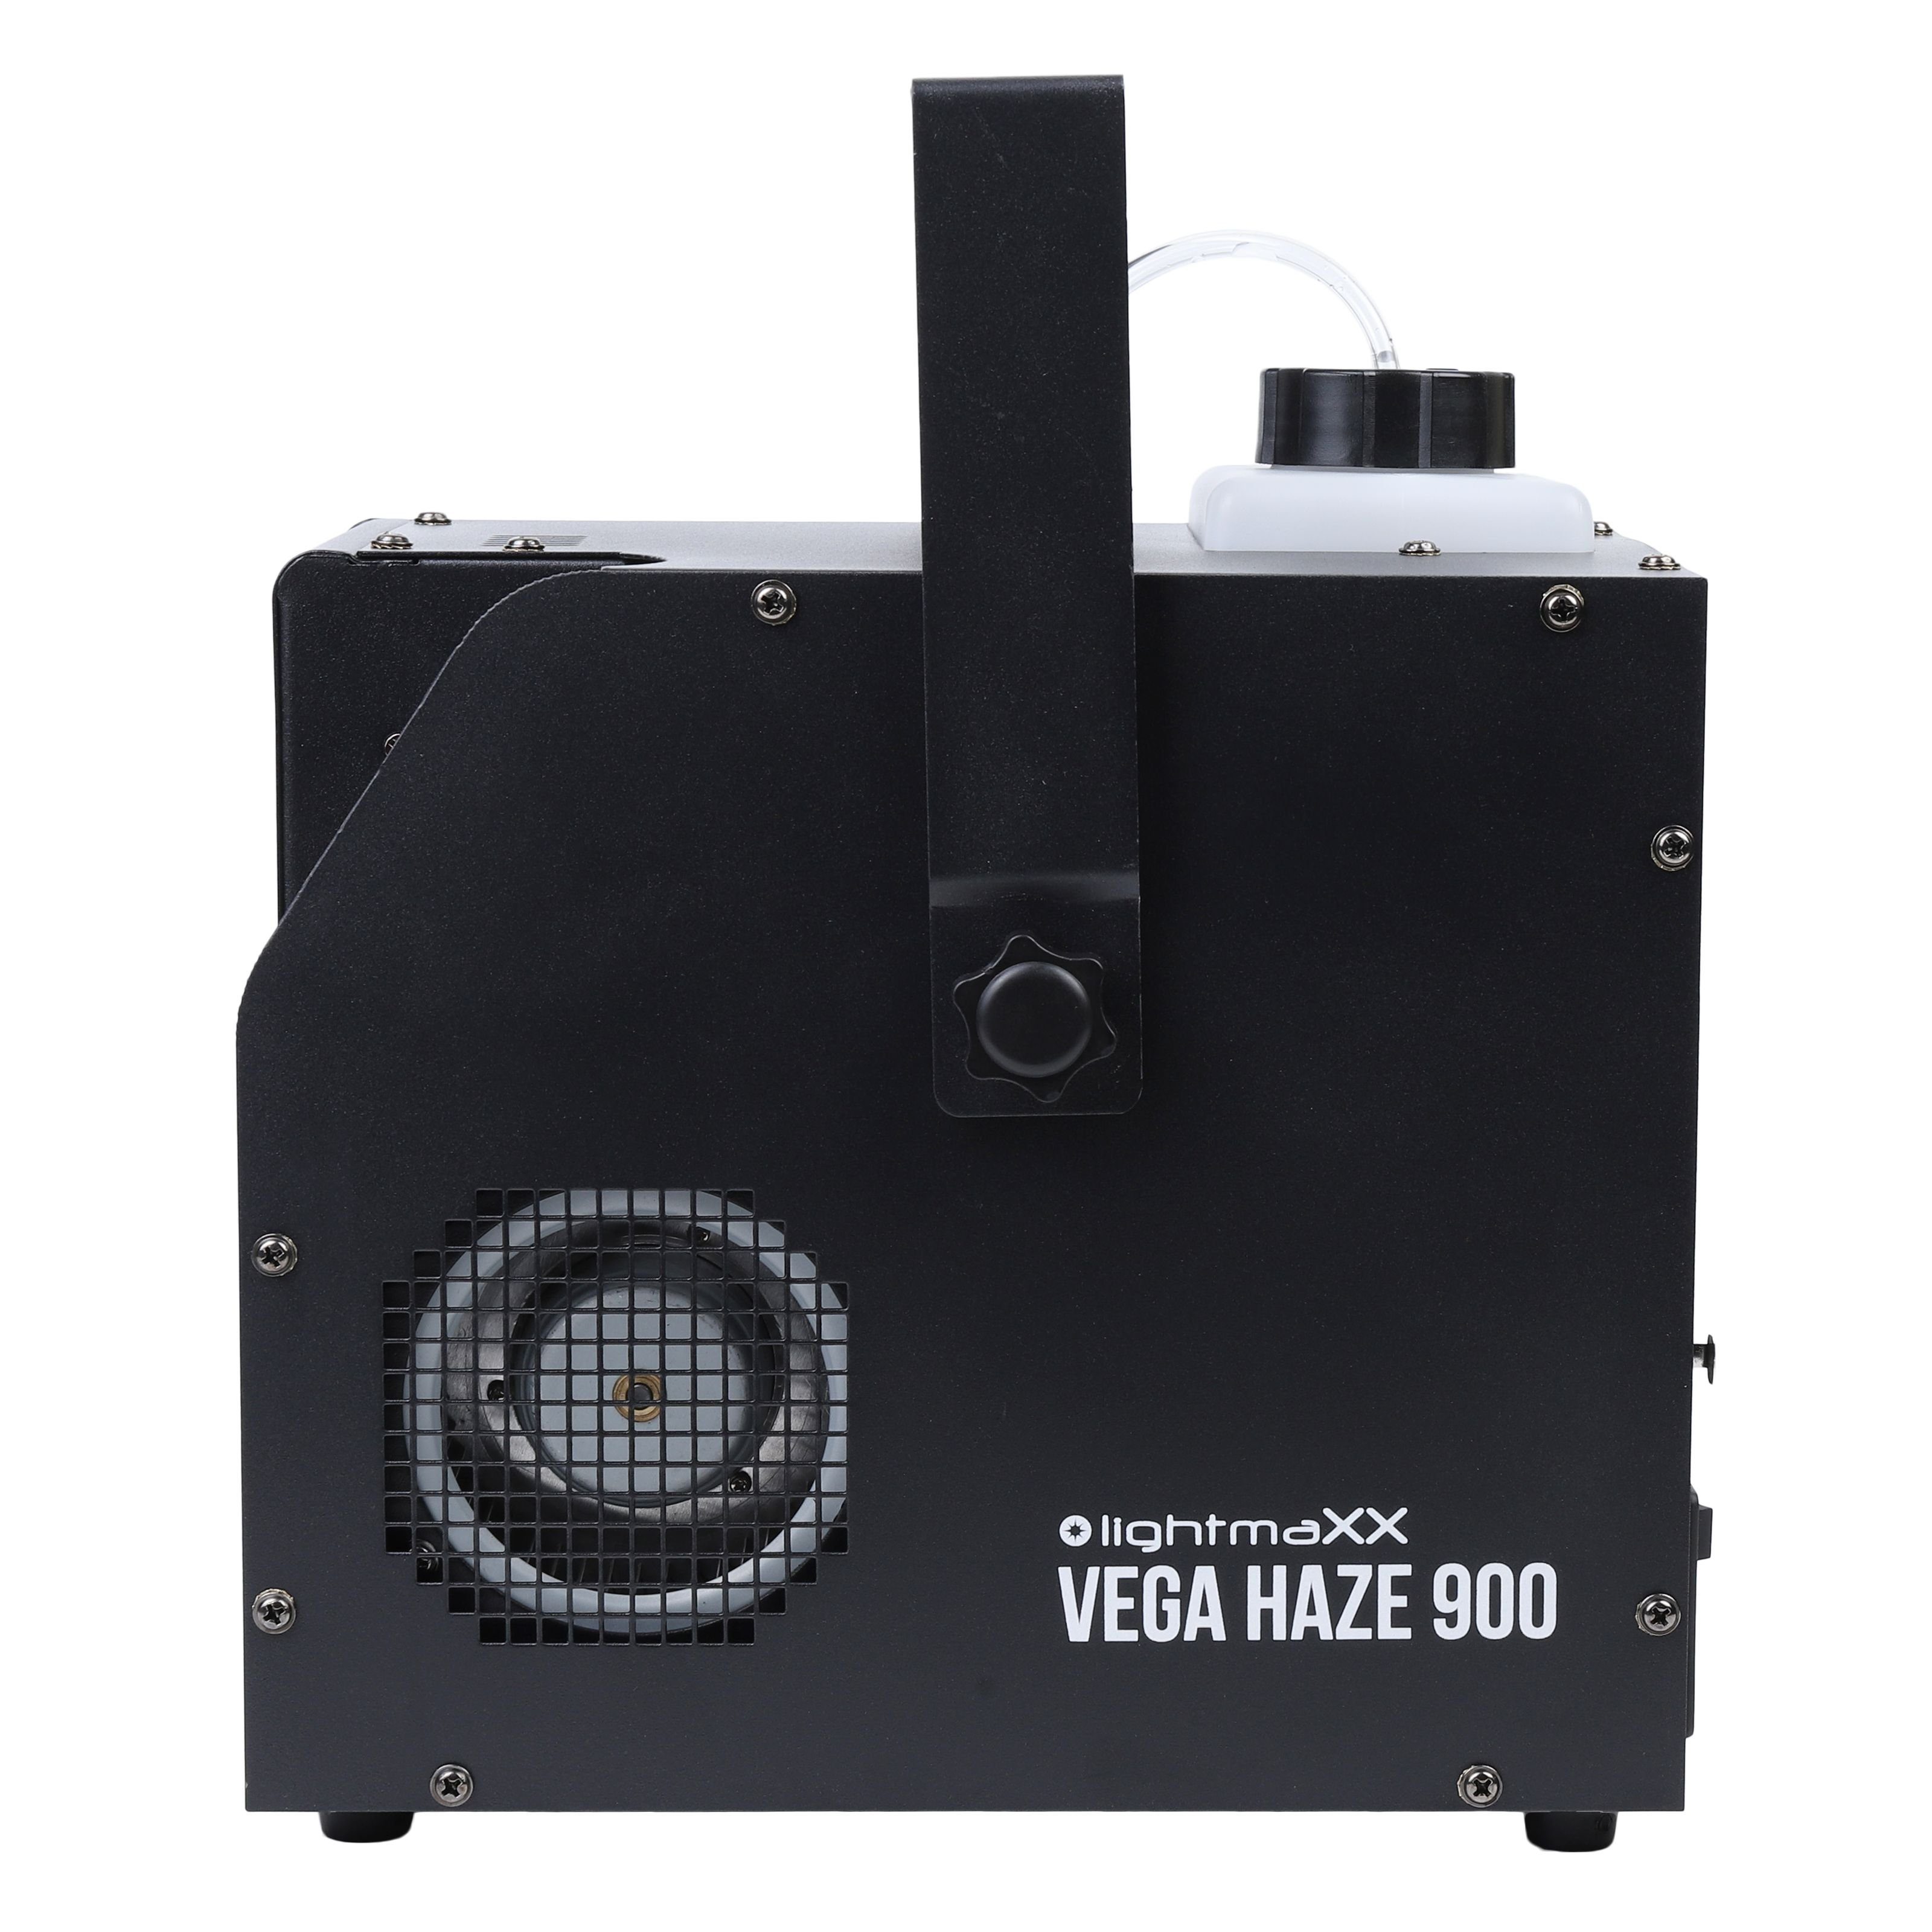 lightmaXX Discolicht, Vega Haze 900